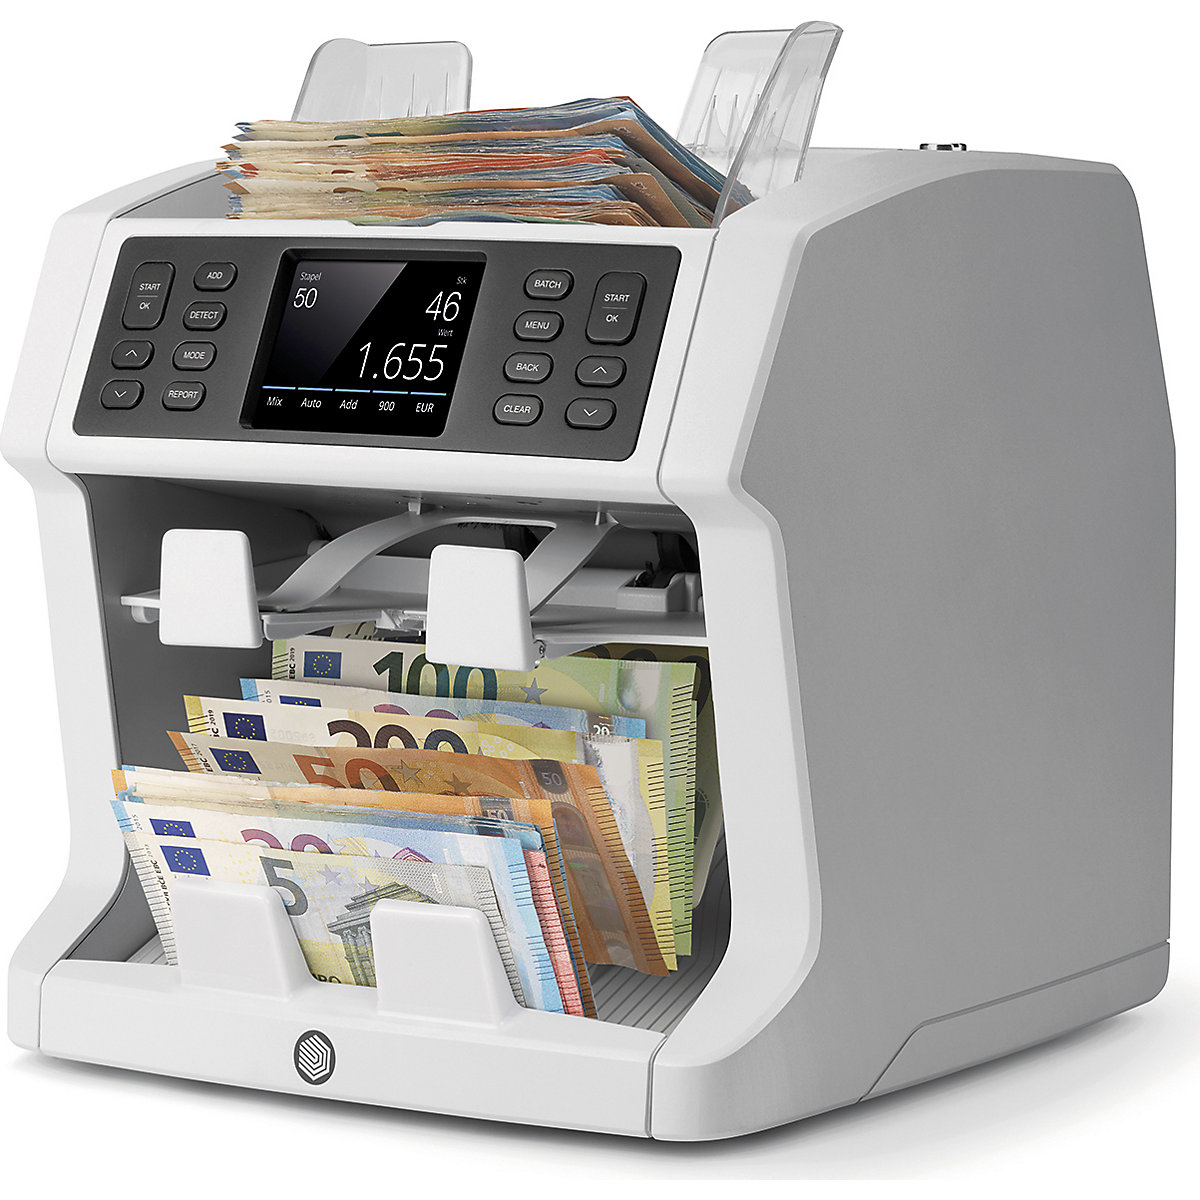 Máquina de contar dinheiro para contagem não organizada com função de organização - Safescan